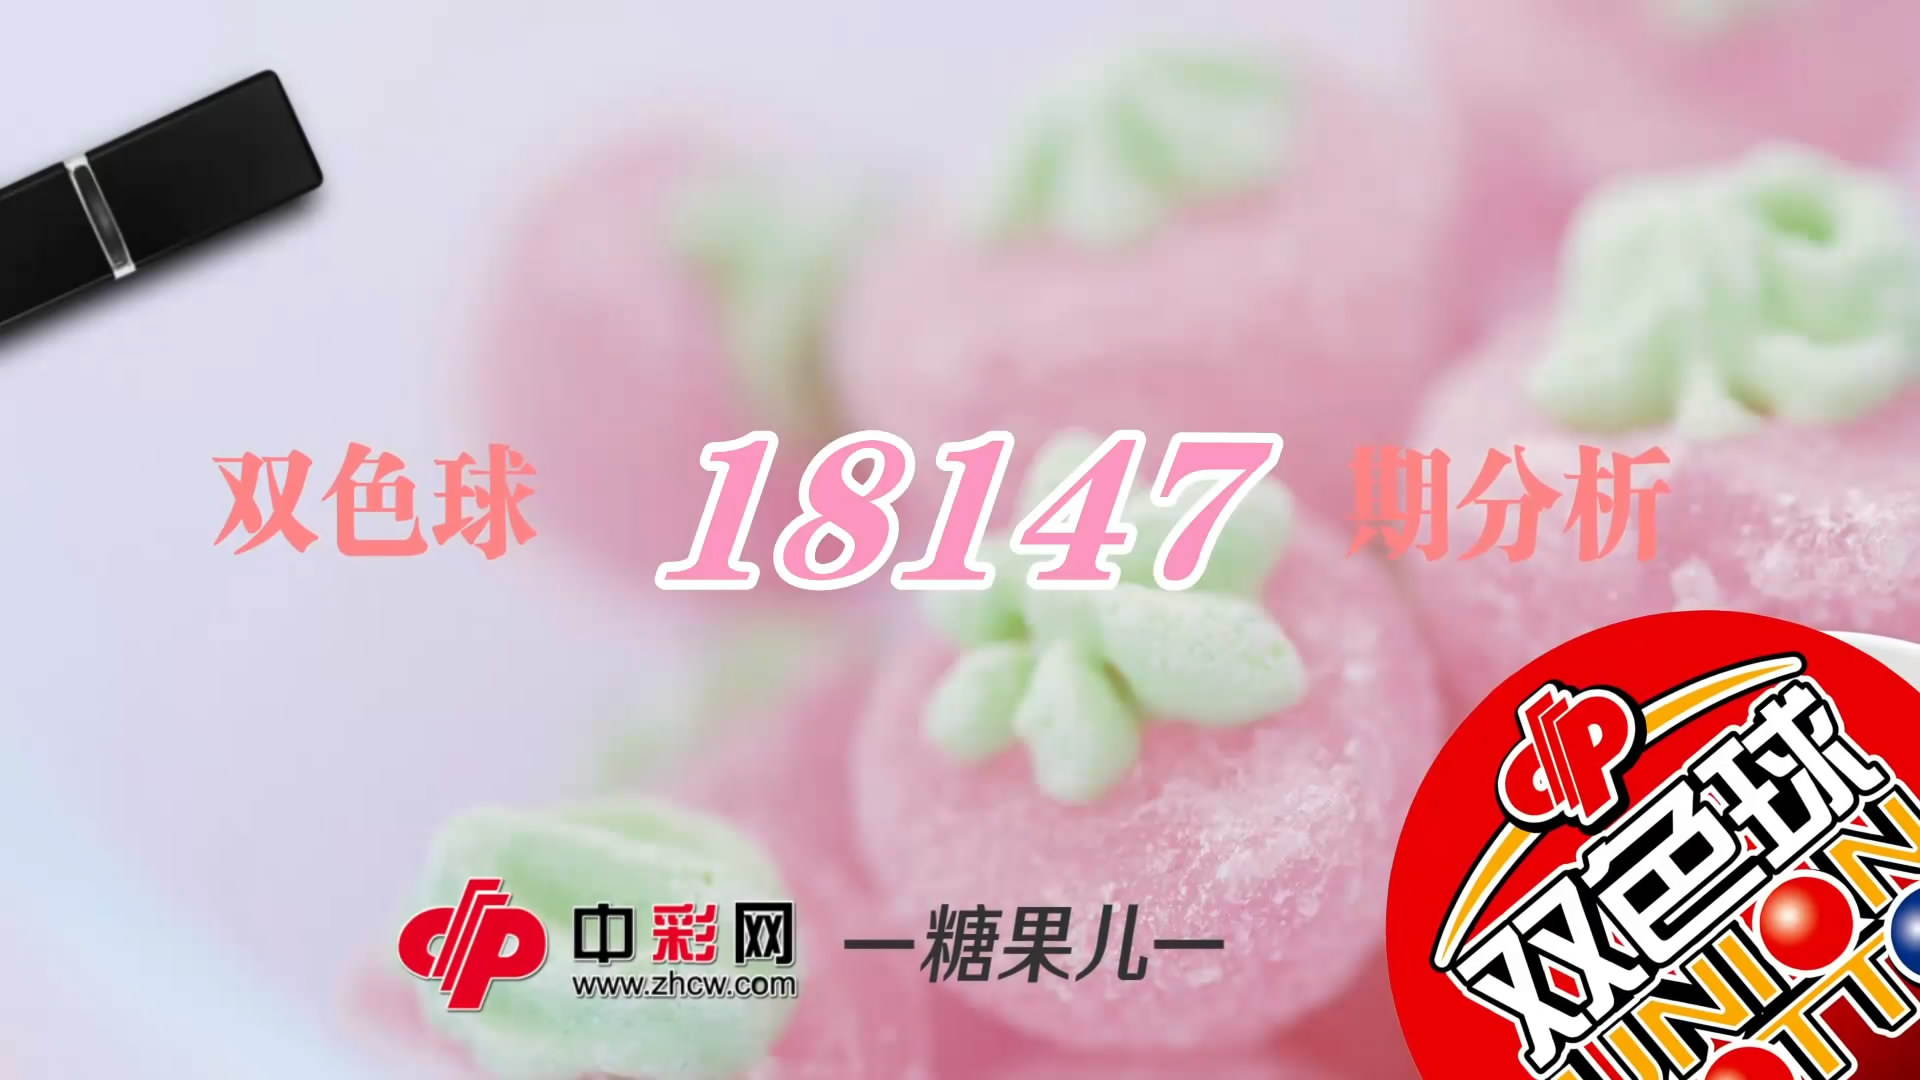 【中彩视频】糖果儿双色球第18147期